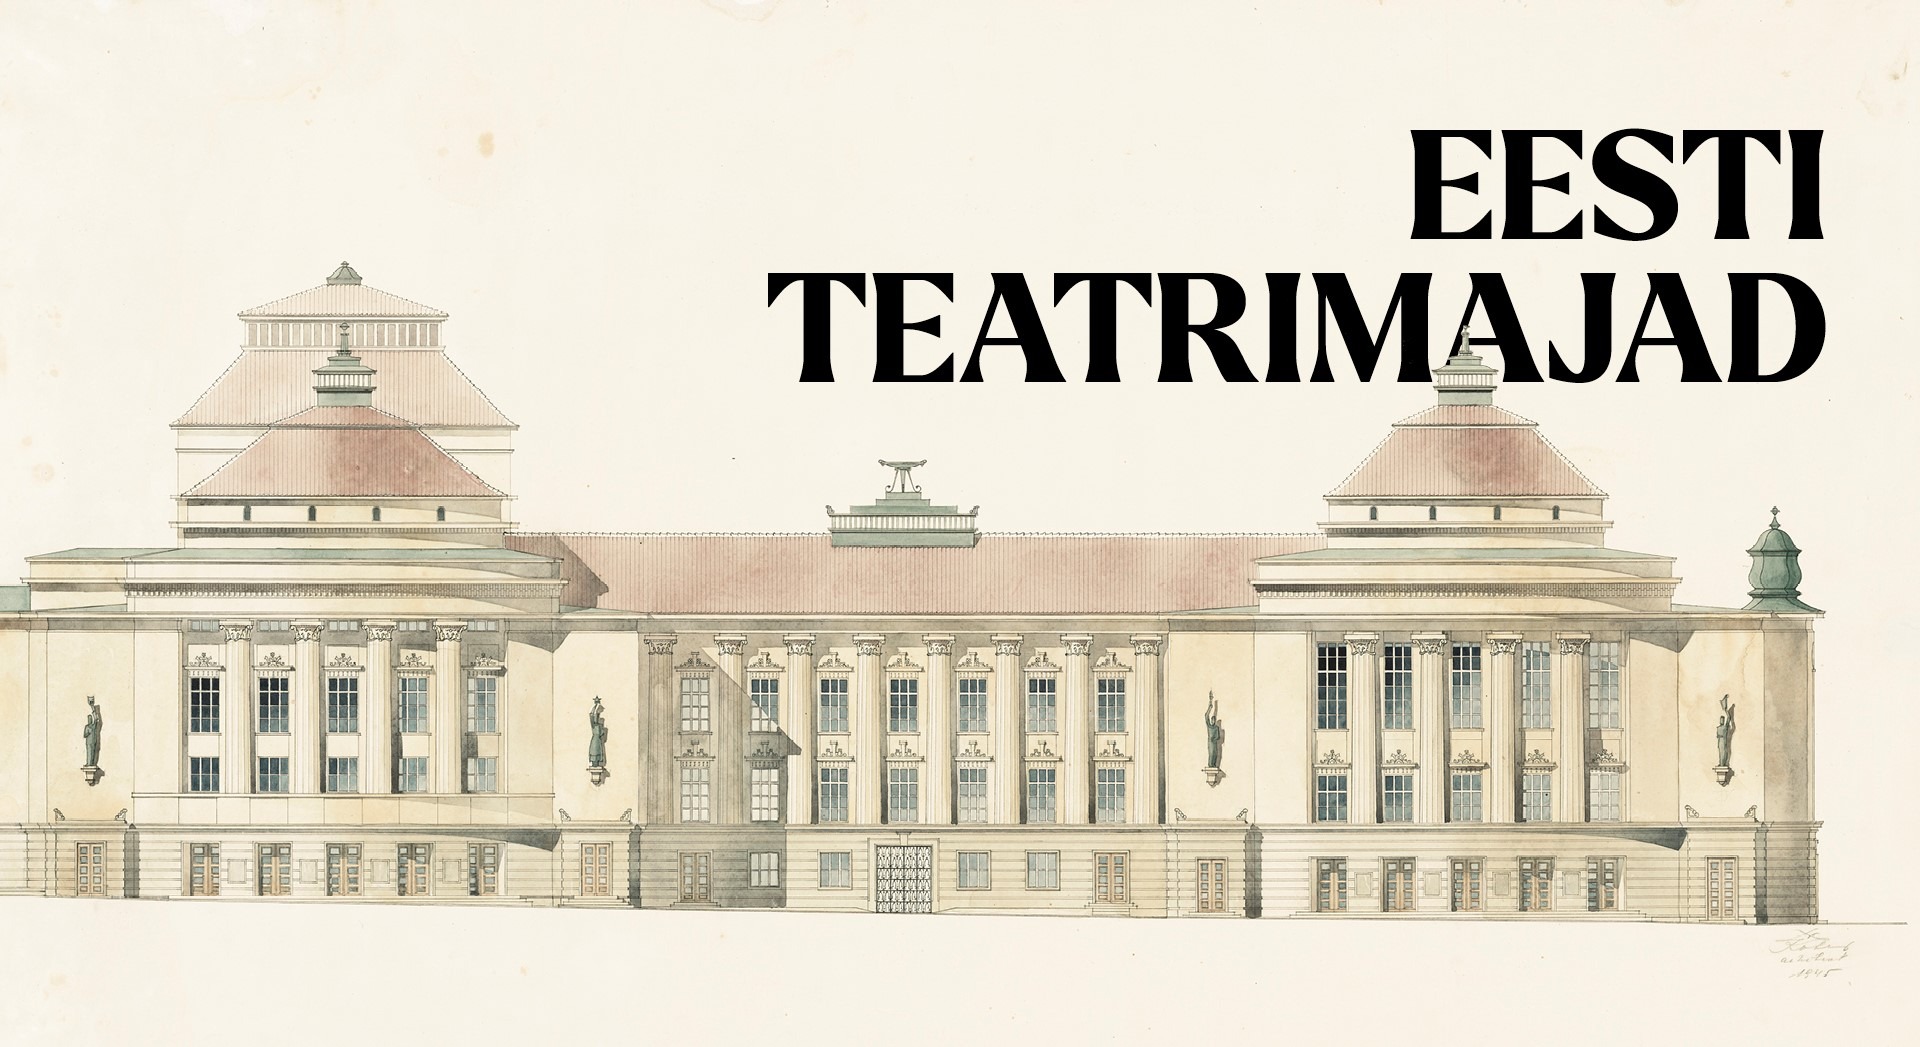 Pildil on joonistus Estonia teatri hoonest: see on kollakas suurte akendega ajalooline maja, mille kahel poolel ulatuvad katusest välja punakate katusekividega tornid. Pildi ülemises paremas nurgas on kirjas "Eesti teatrimajad".